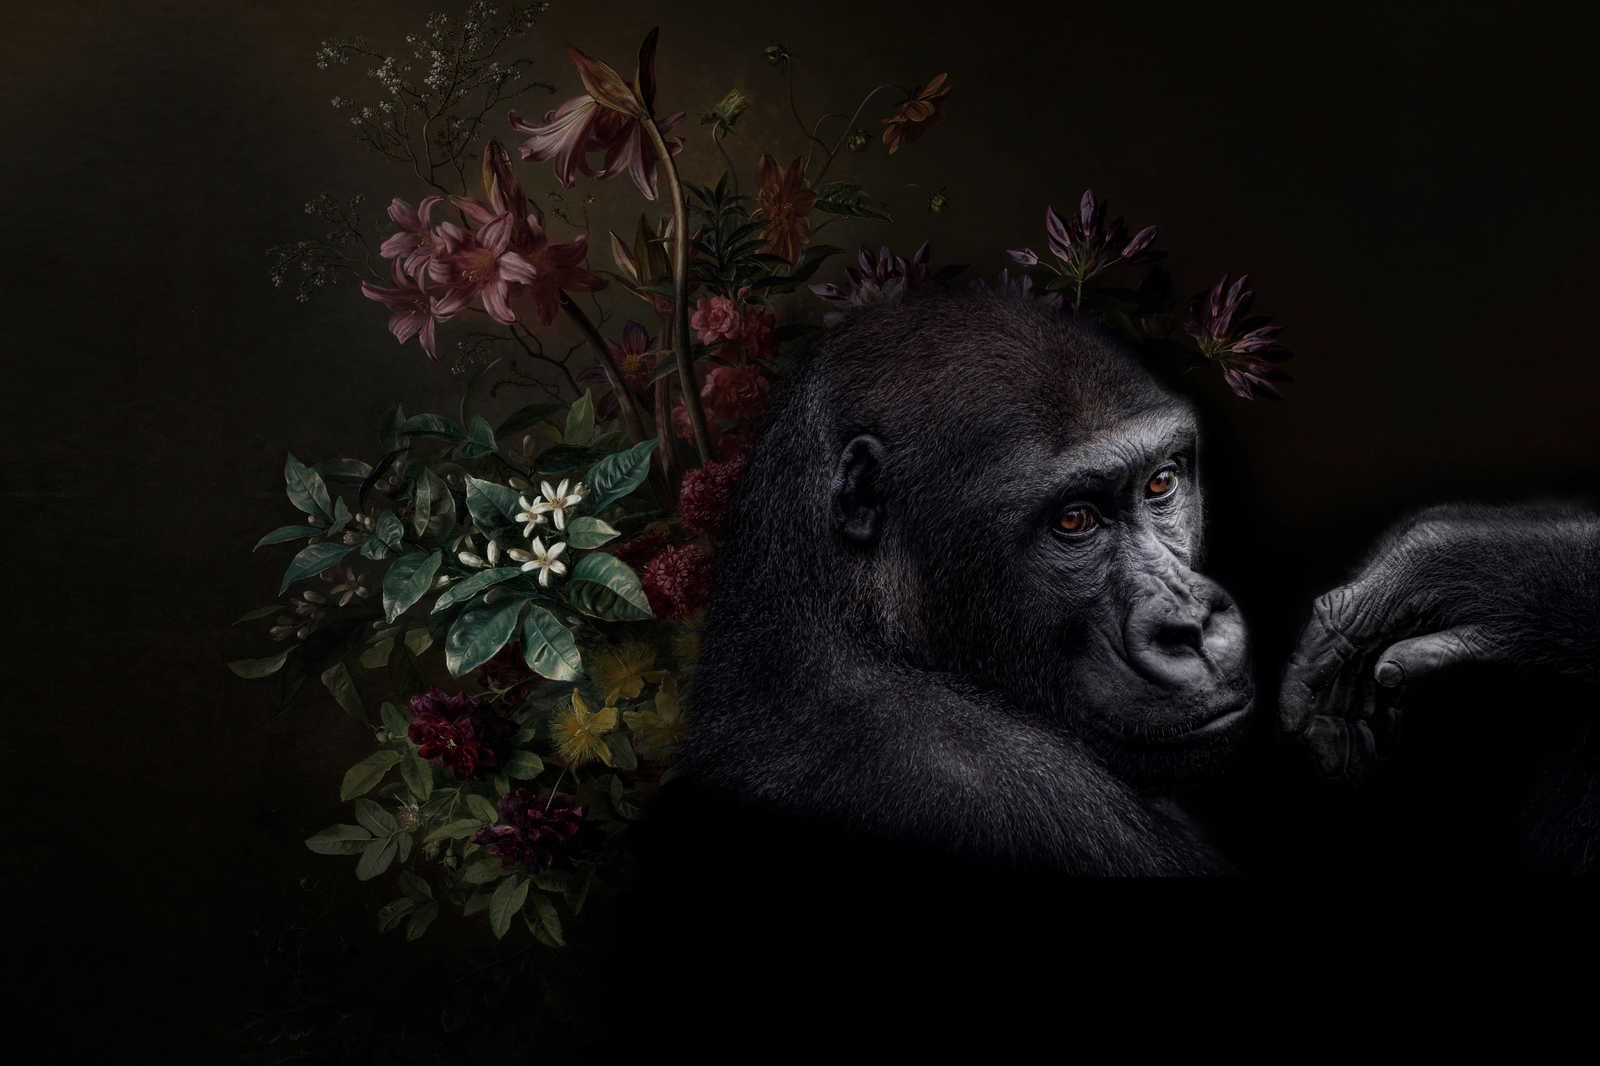             Toile Portrait de gorille avec fleurs - 0,90 m x 0,60 m
        